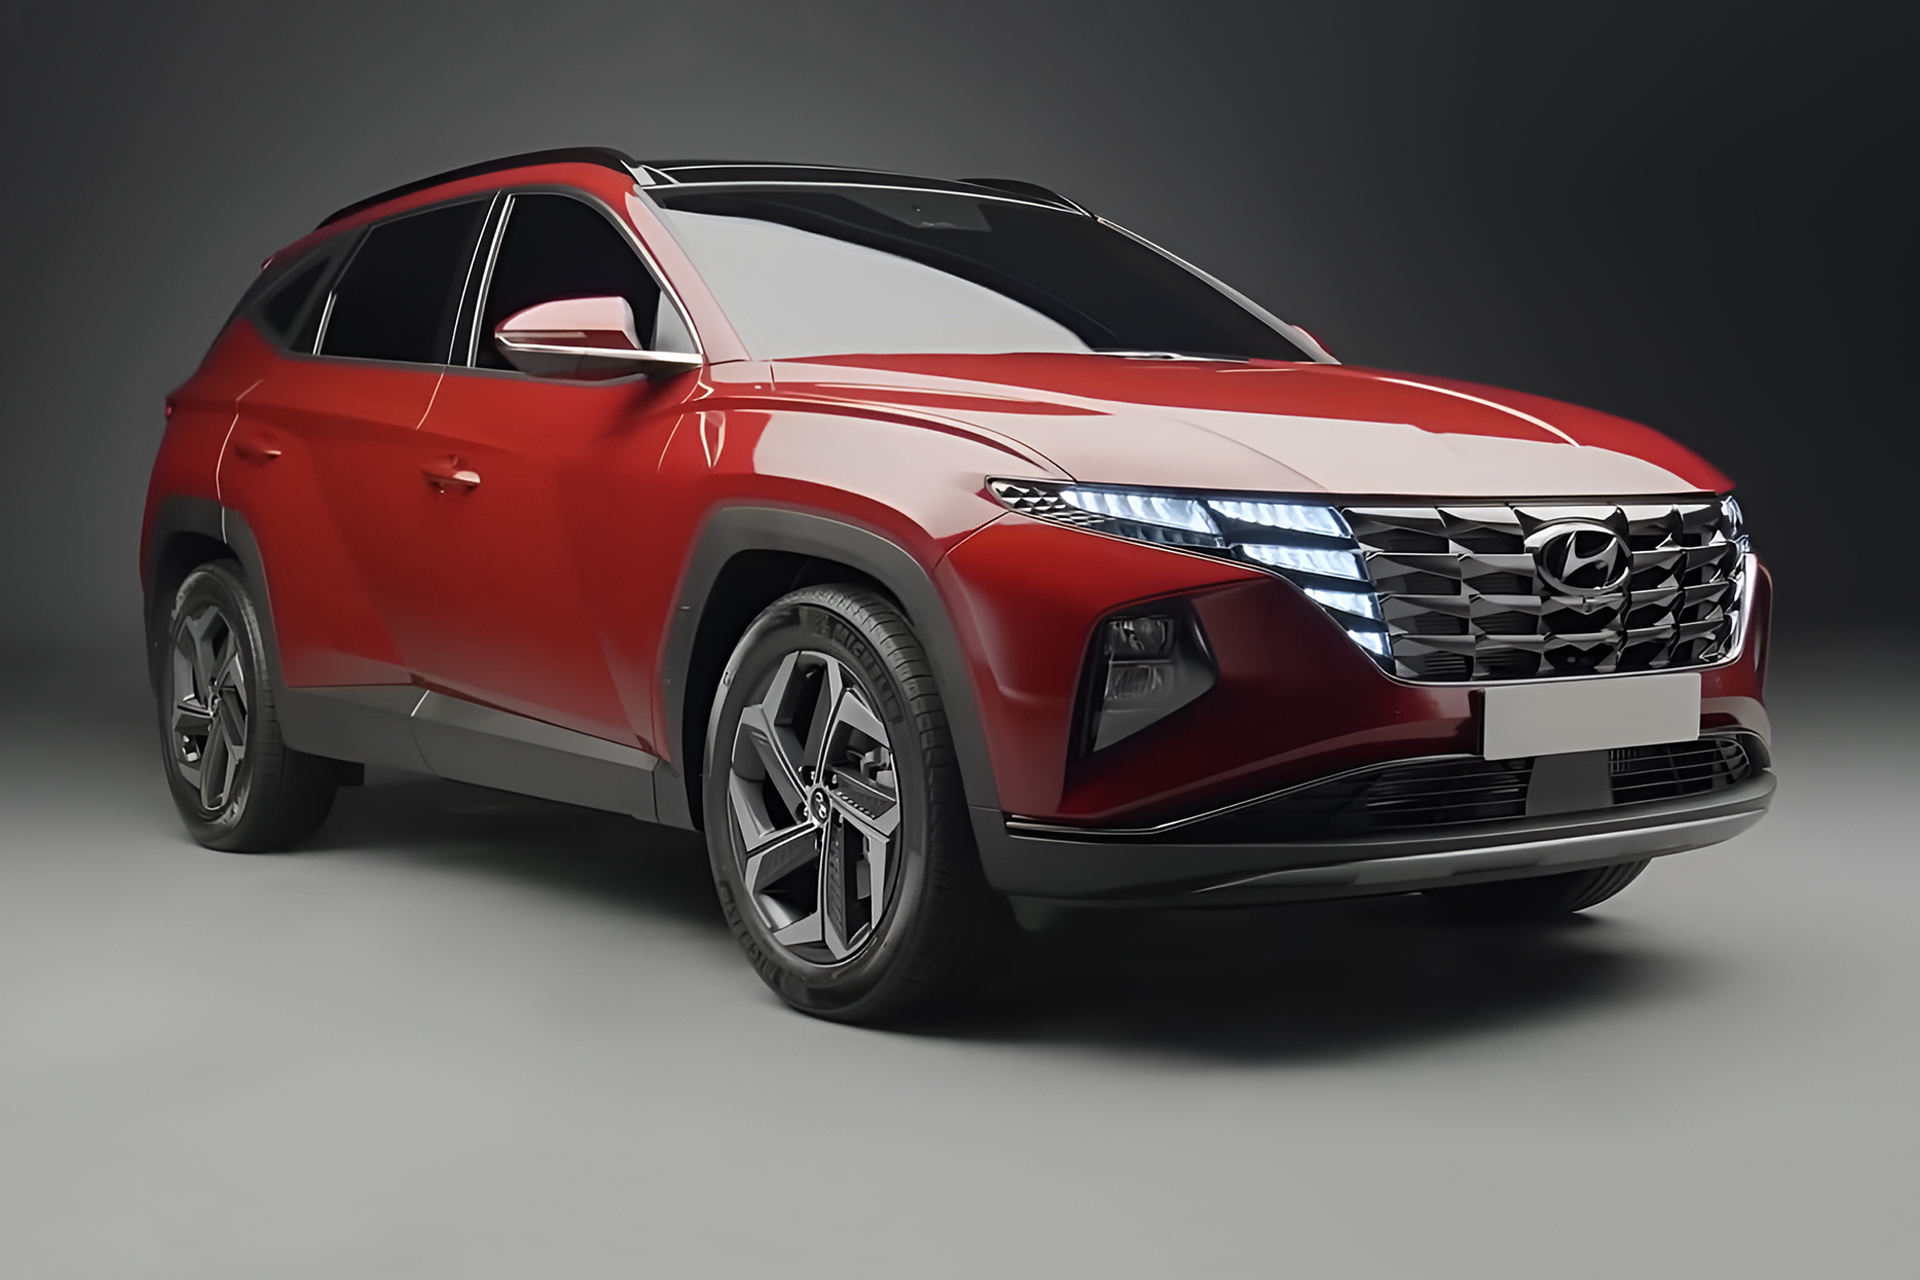 Hyundai Creta 100 eletrico chega em 2025 Segundo fontes estrangeiras uma versao eletrica do SUV ja se encontra em desenvolvimento